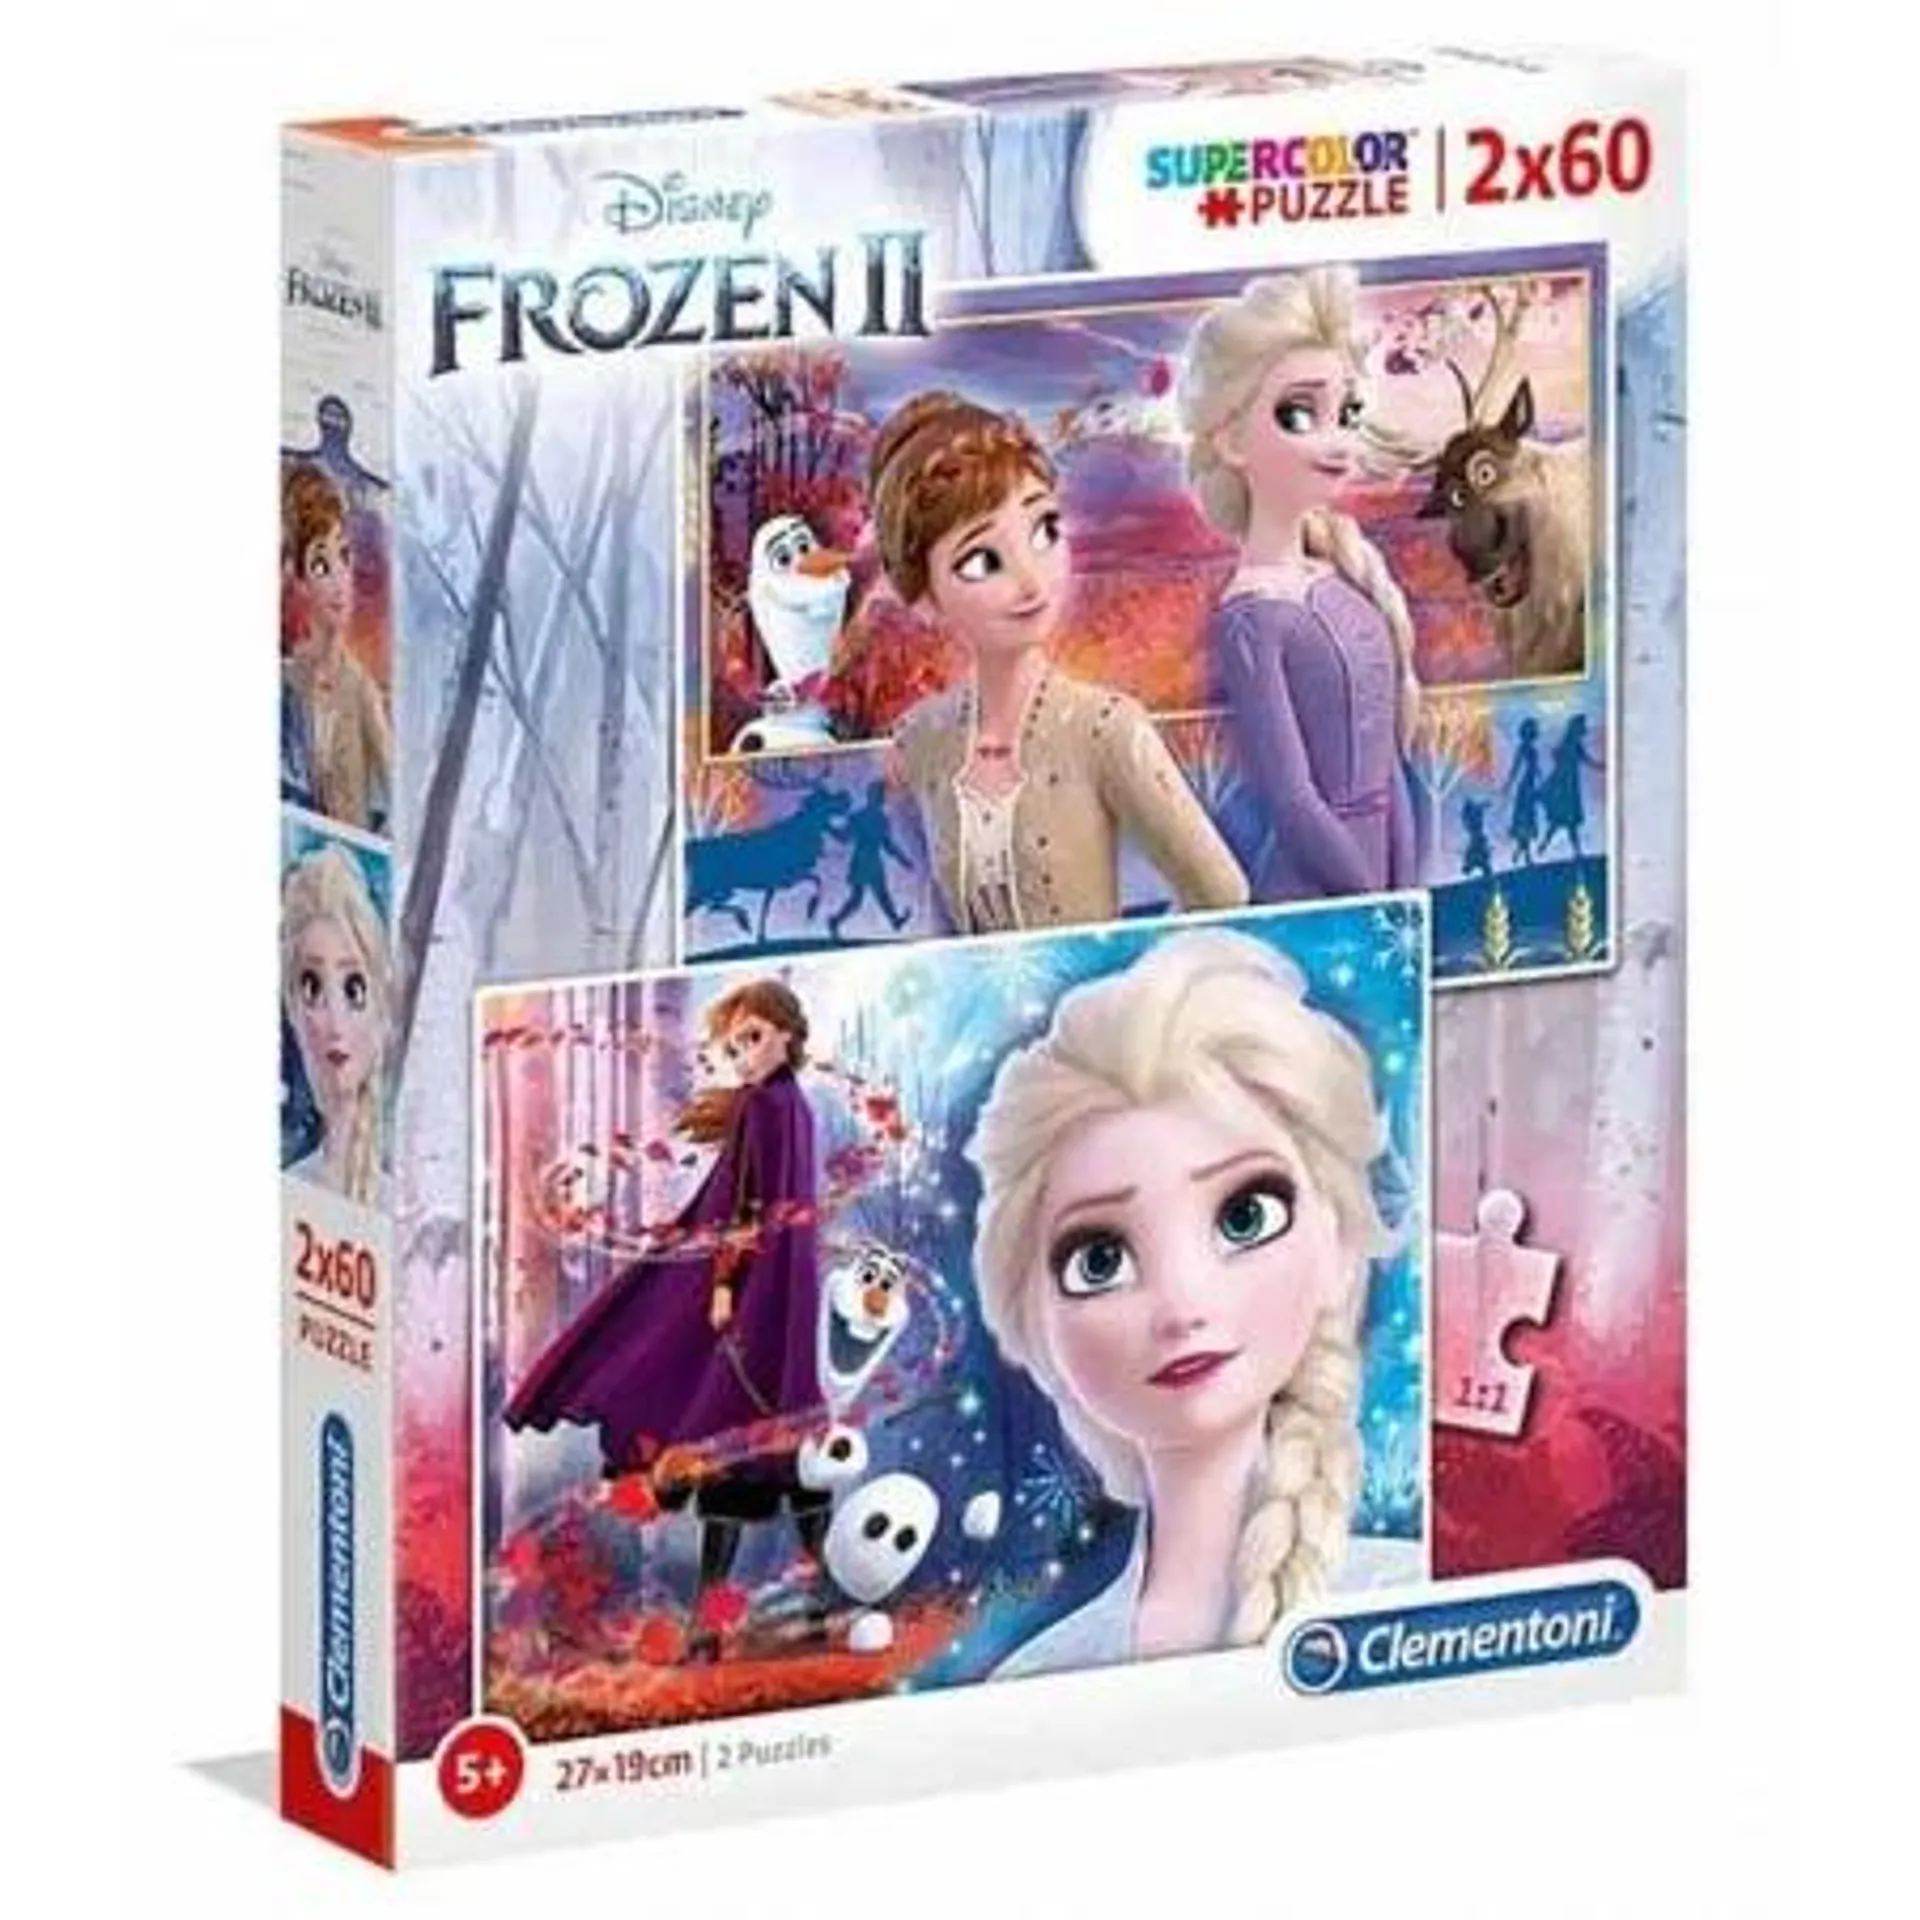 Puzzle 2x60 peças Disney Frozen II